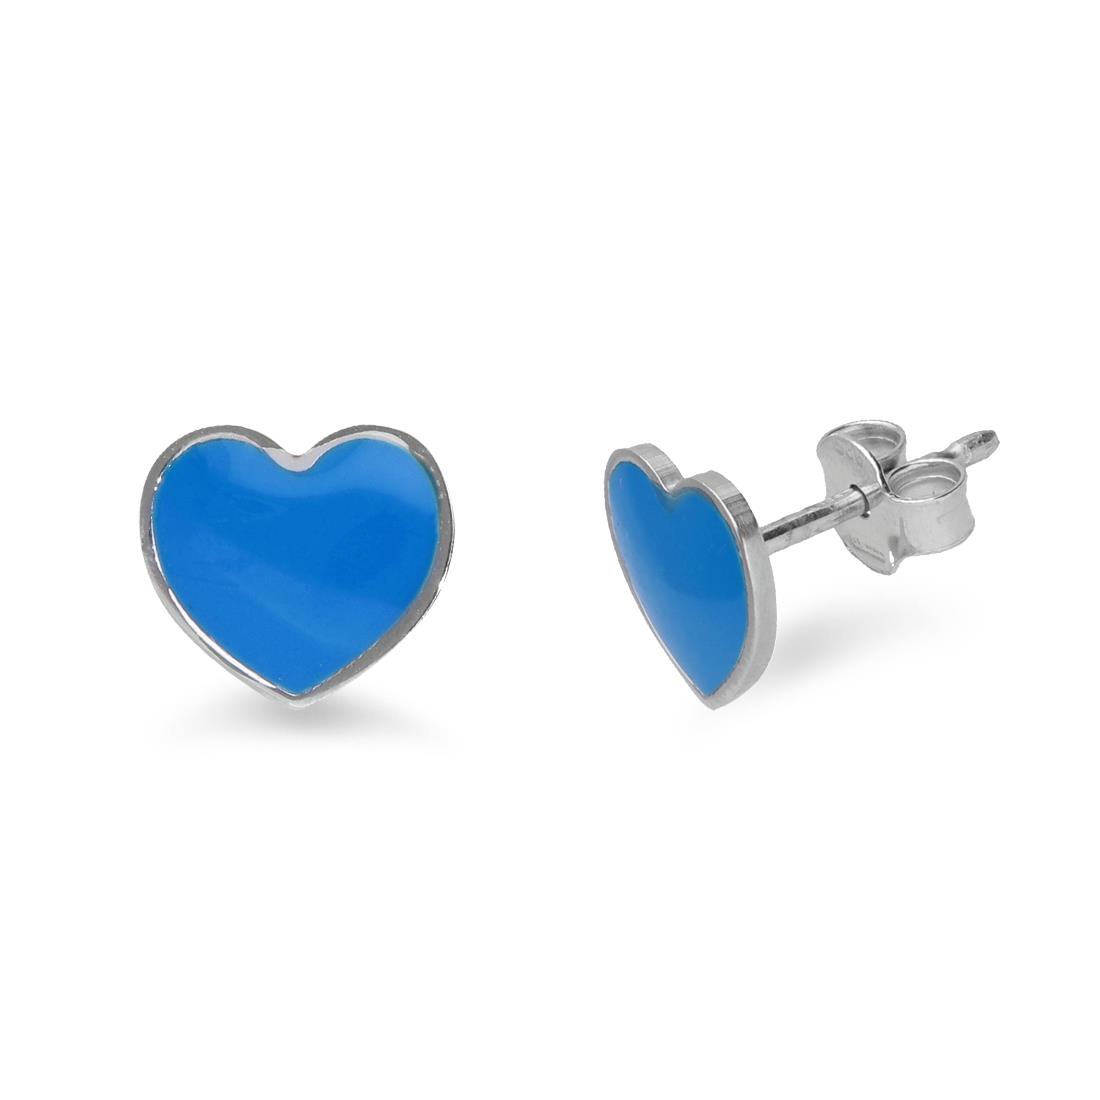 Silver earrings with blue heart - ALFIERI & ST. JOHN 925